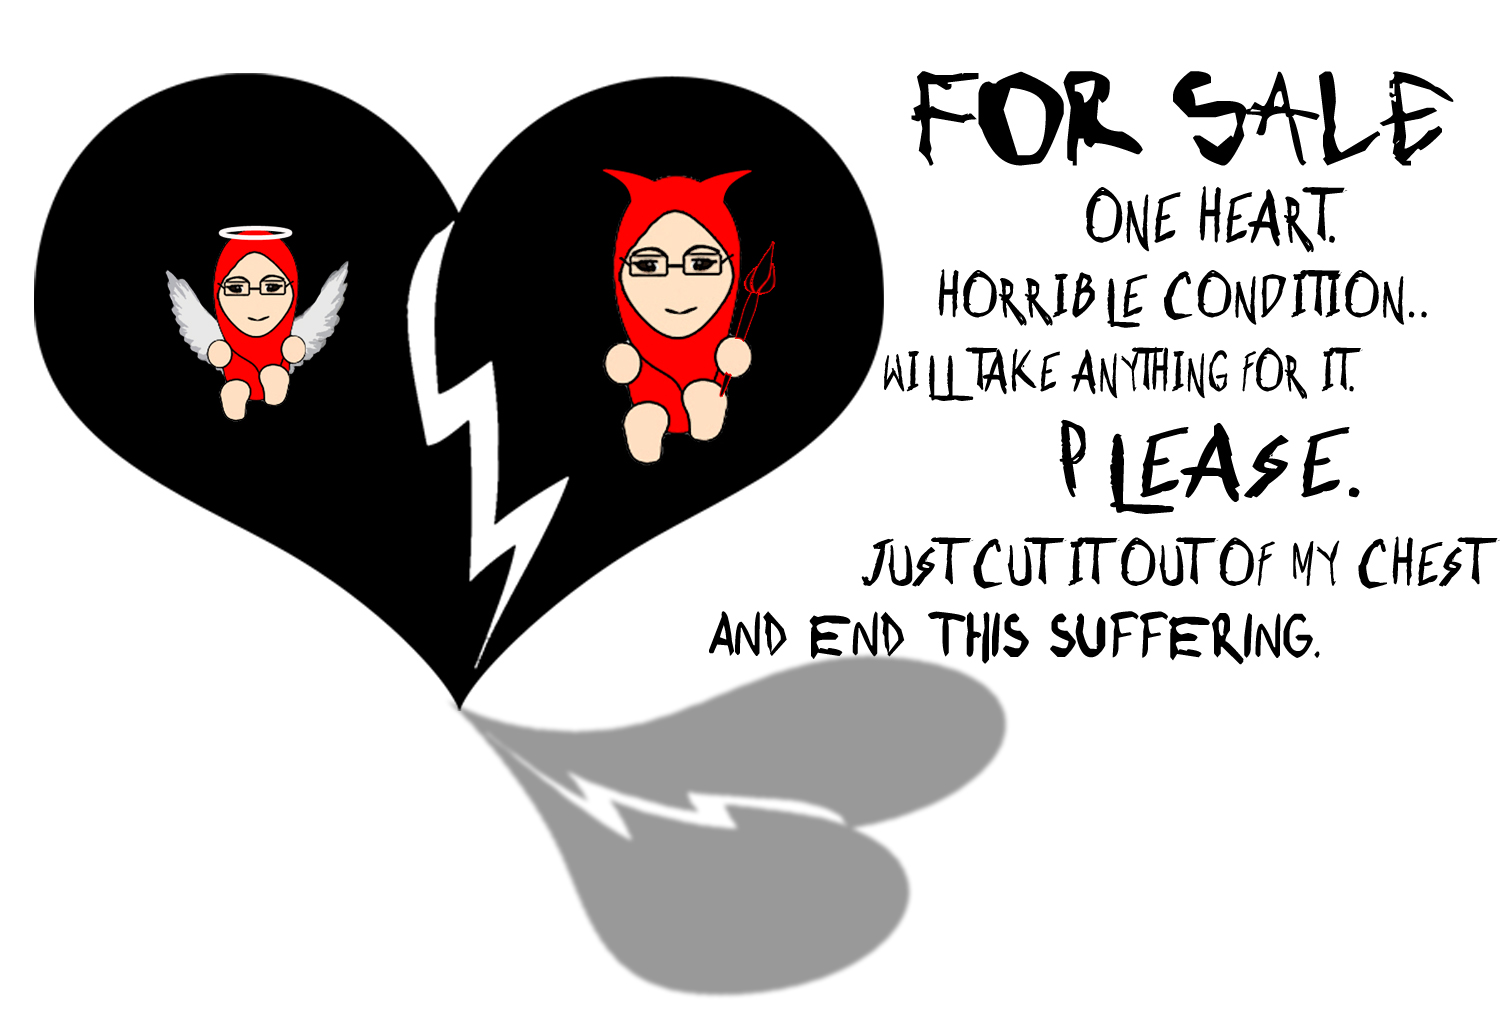 patah hati karena cinta emo patah hati karena cinta kata patah hati animasi patah hati patah hati kartun